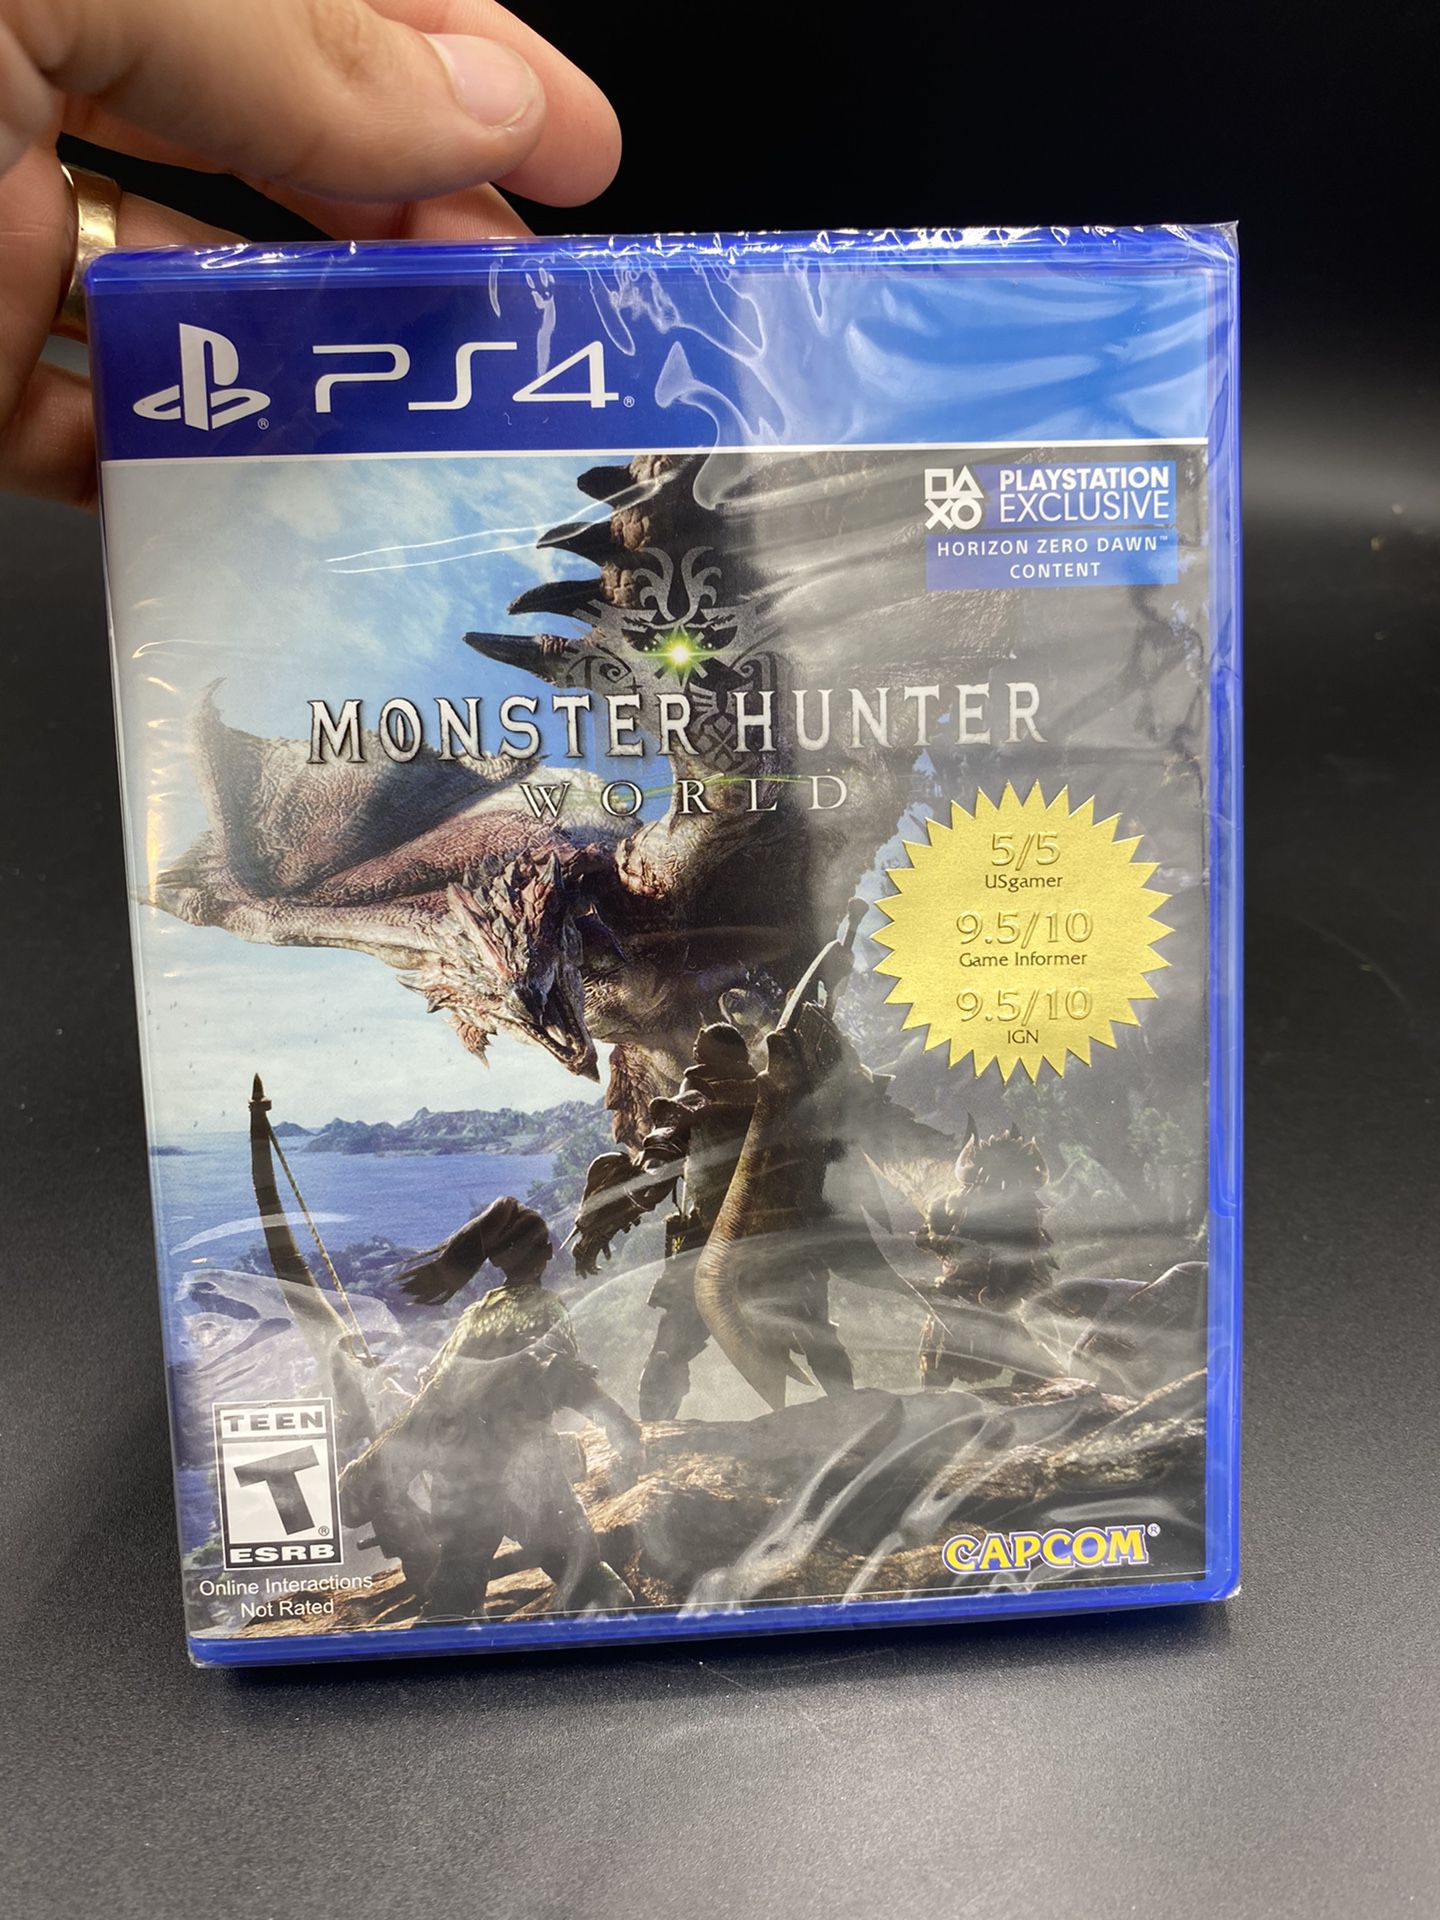 Capcom Monster Hunter World PS4 Video Game Brand New Sealed 